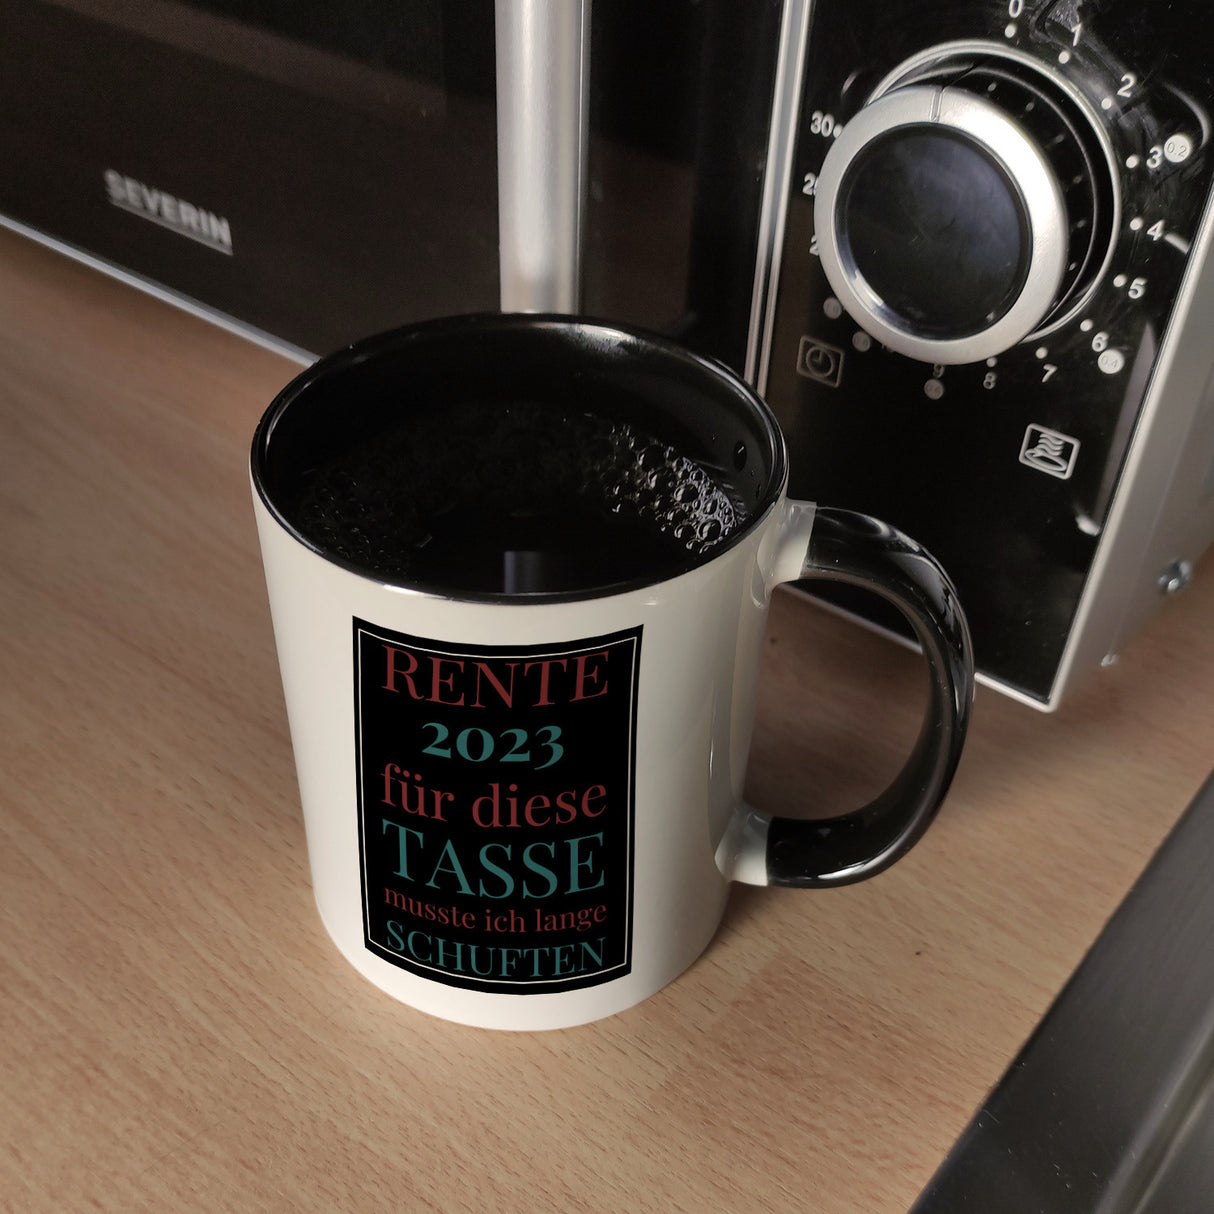 Rente 2023 Kaffeebecher eine bunte Tasse für Rentner